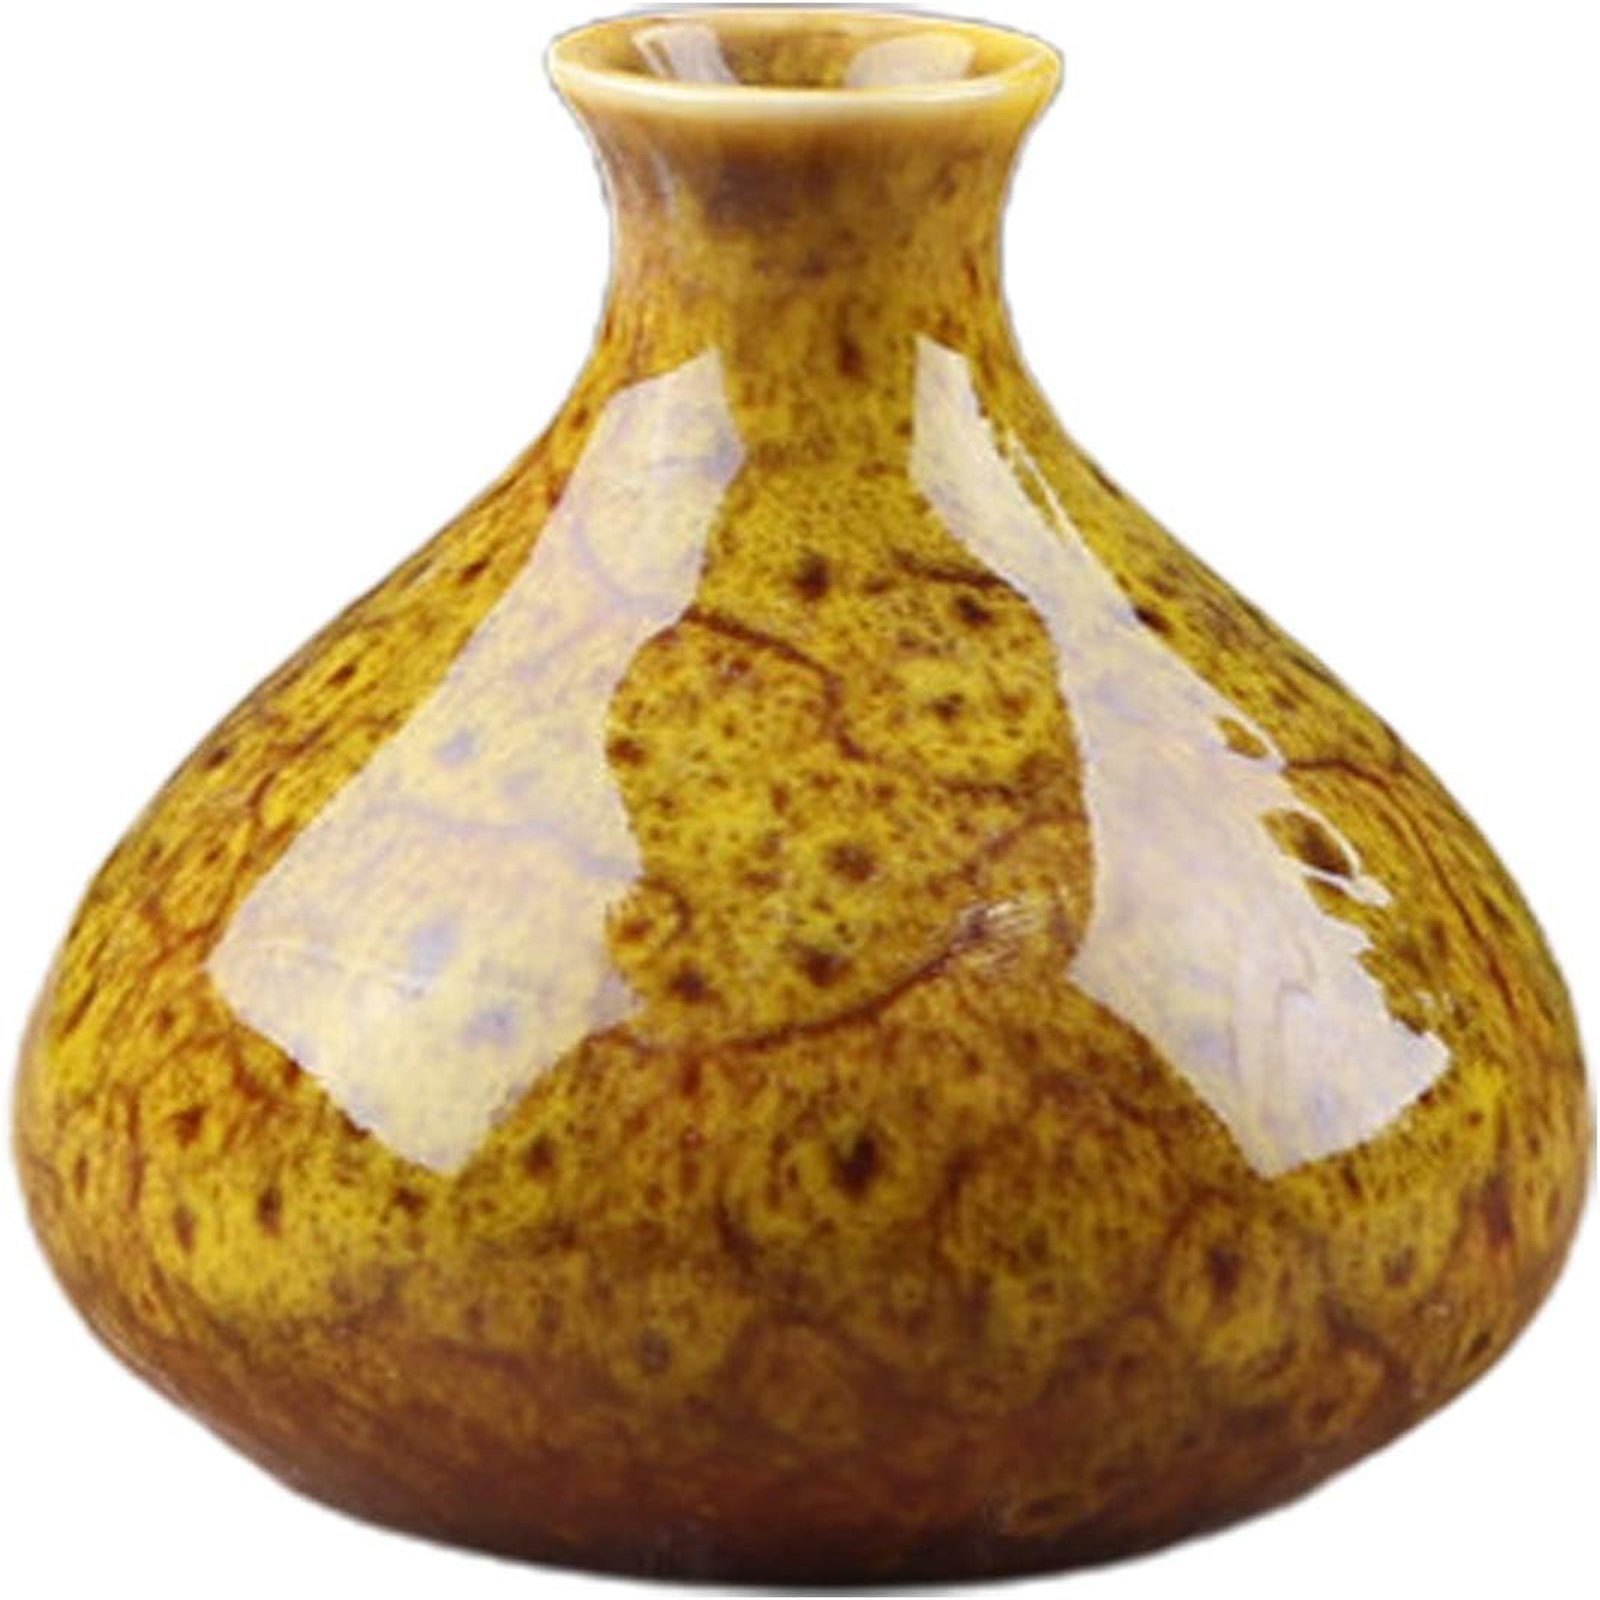 SEEZSSA Dekovase Keramikvase,Blumentopf deko für Wohnzimmer, Heimdekoration, Regal, Brenngeformte Keramik-Vase,großer Bauch, Kaliber 2.4cm,7x7.5cm,bunt Gelb